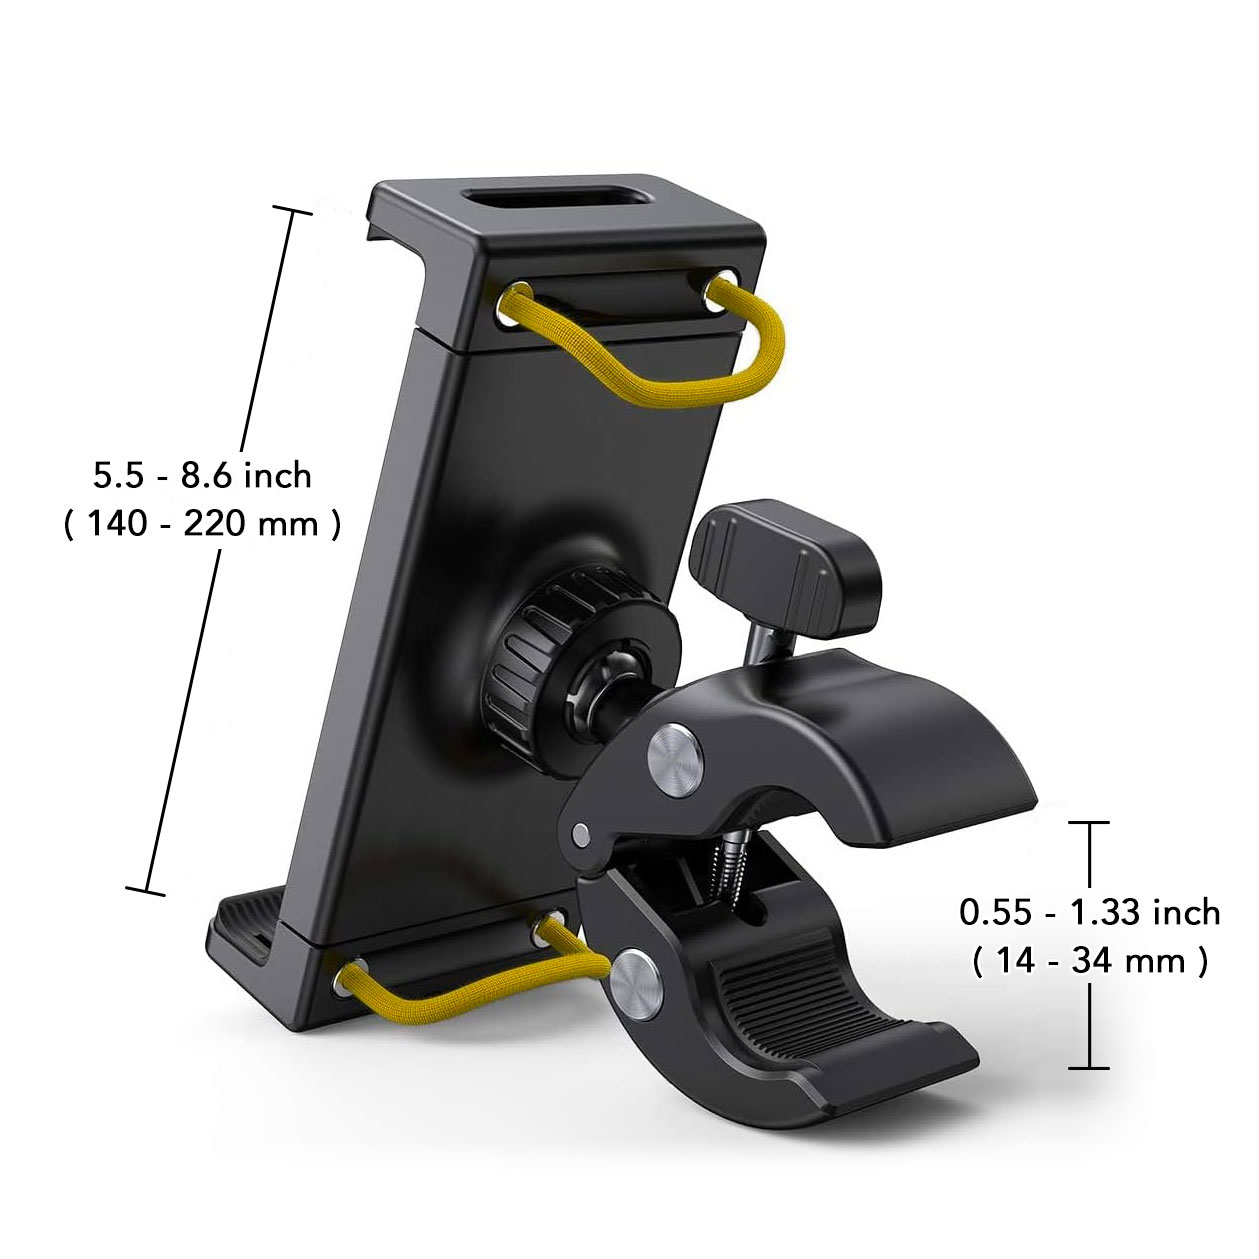 Adjustable Tablet Holder for 3D Measuring - widely compatible